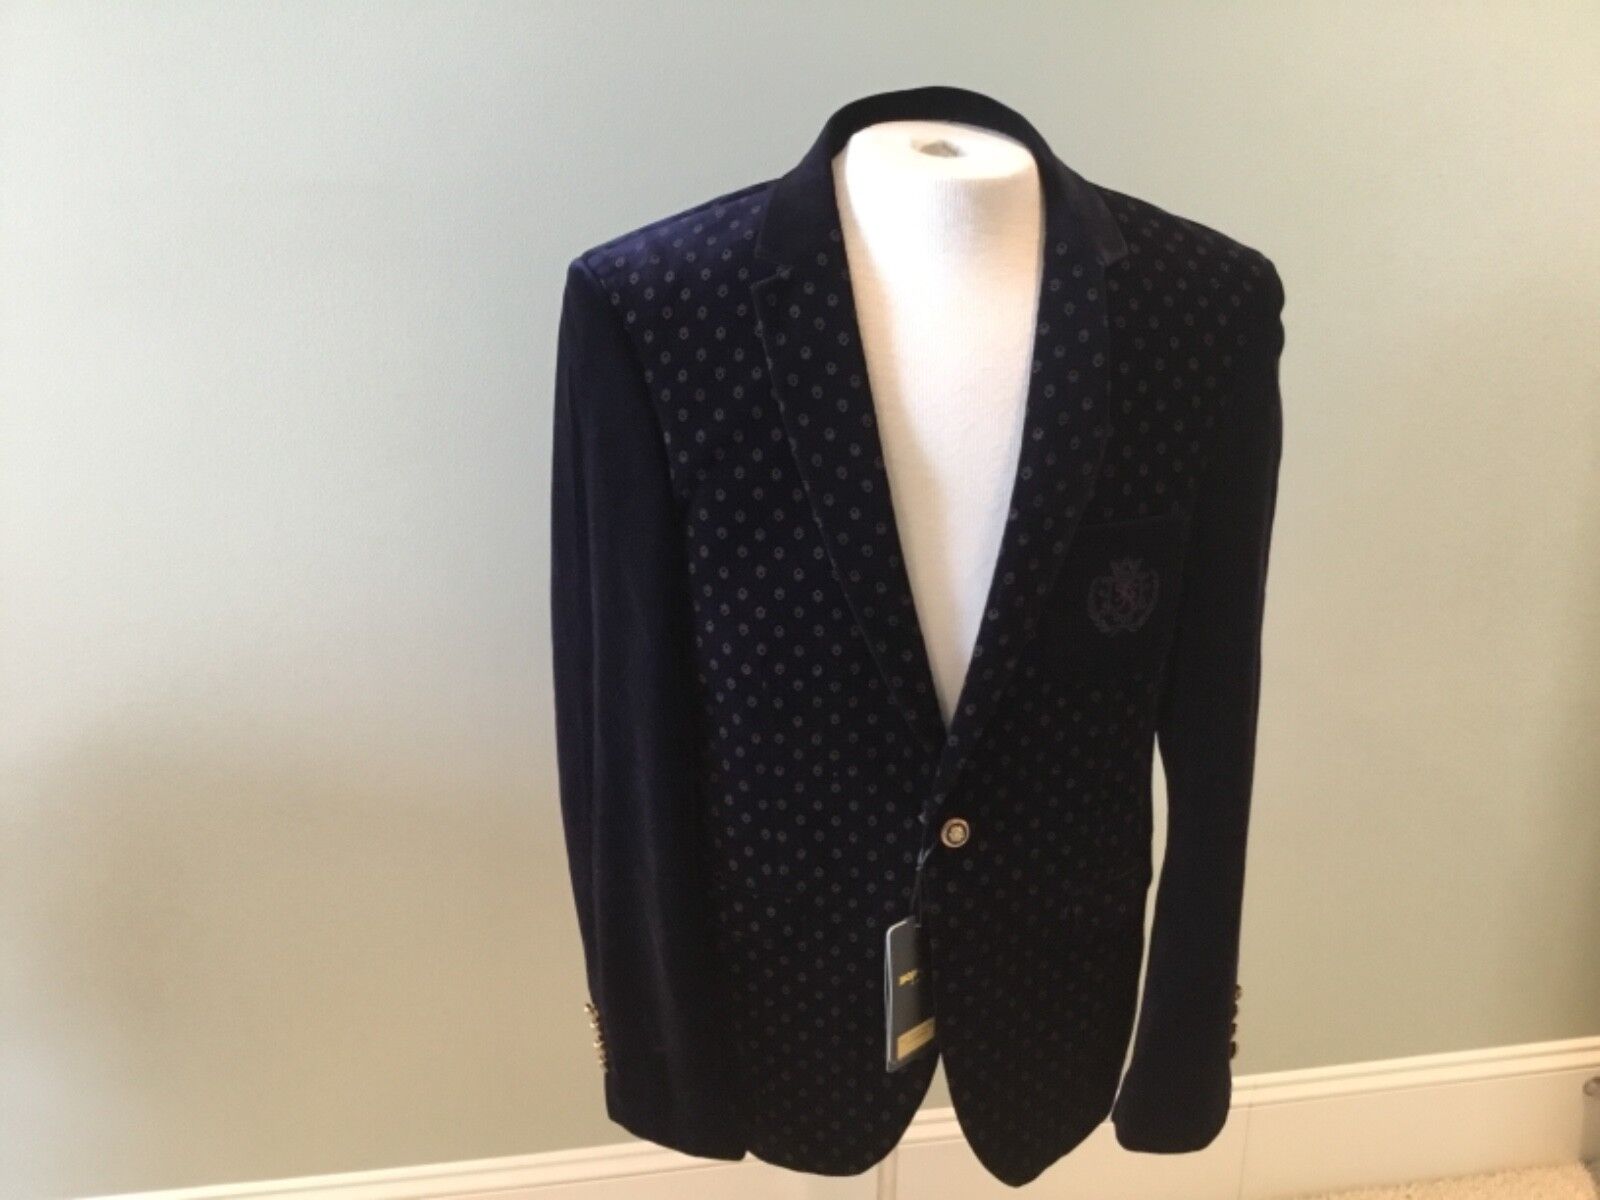 Bonspol Gentleman New Concept Evening Jacket Sports Coat Navy Ha